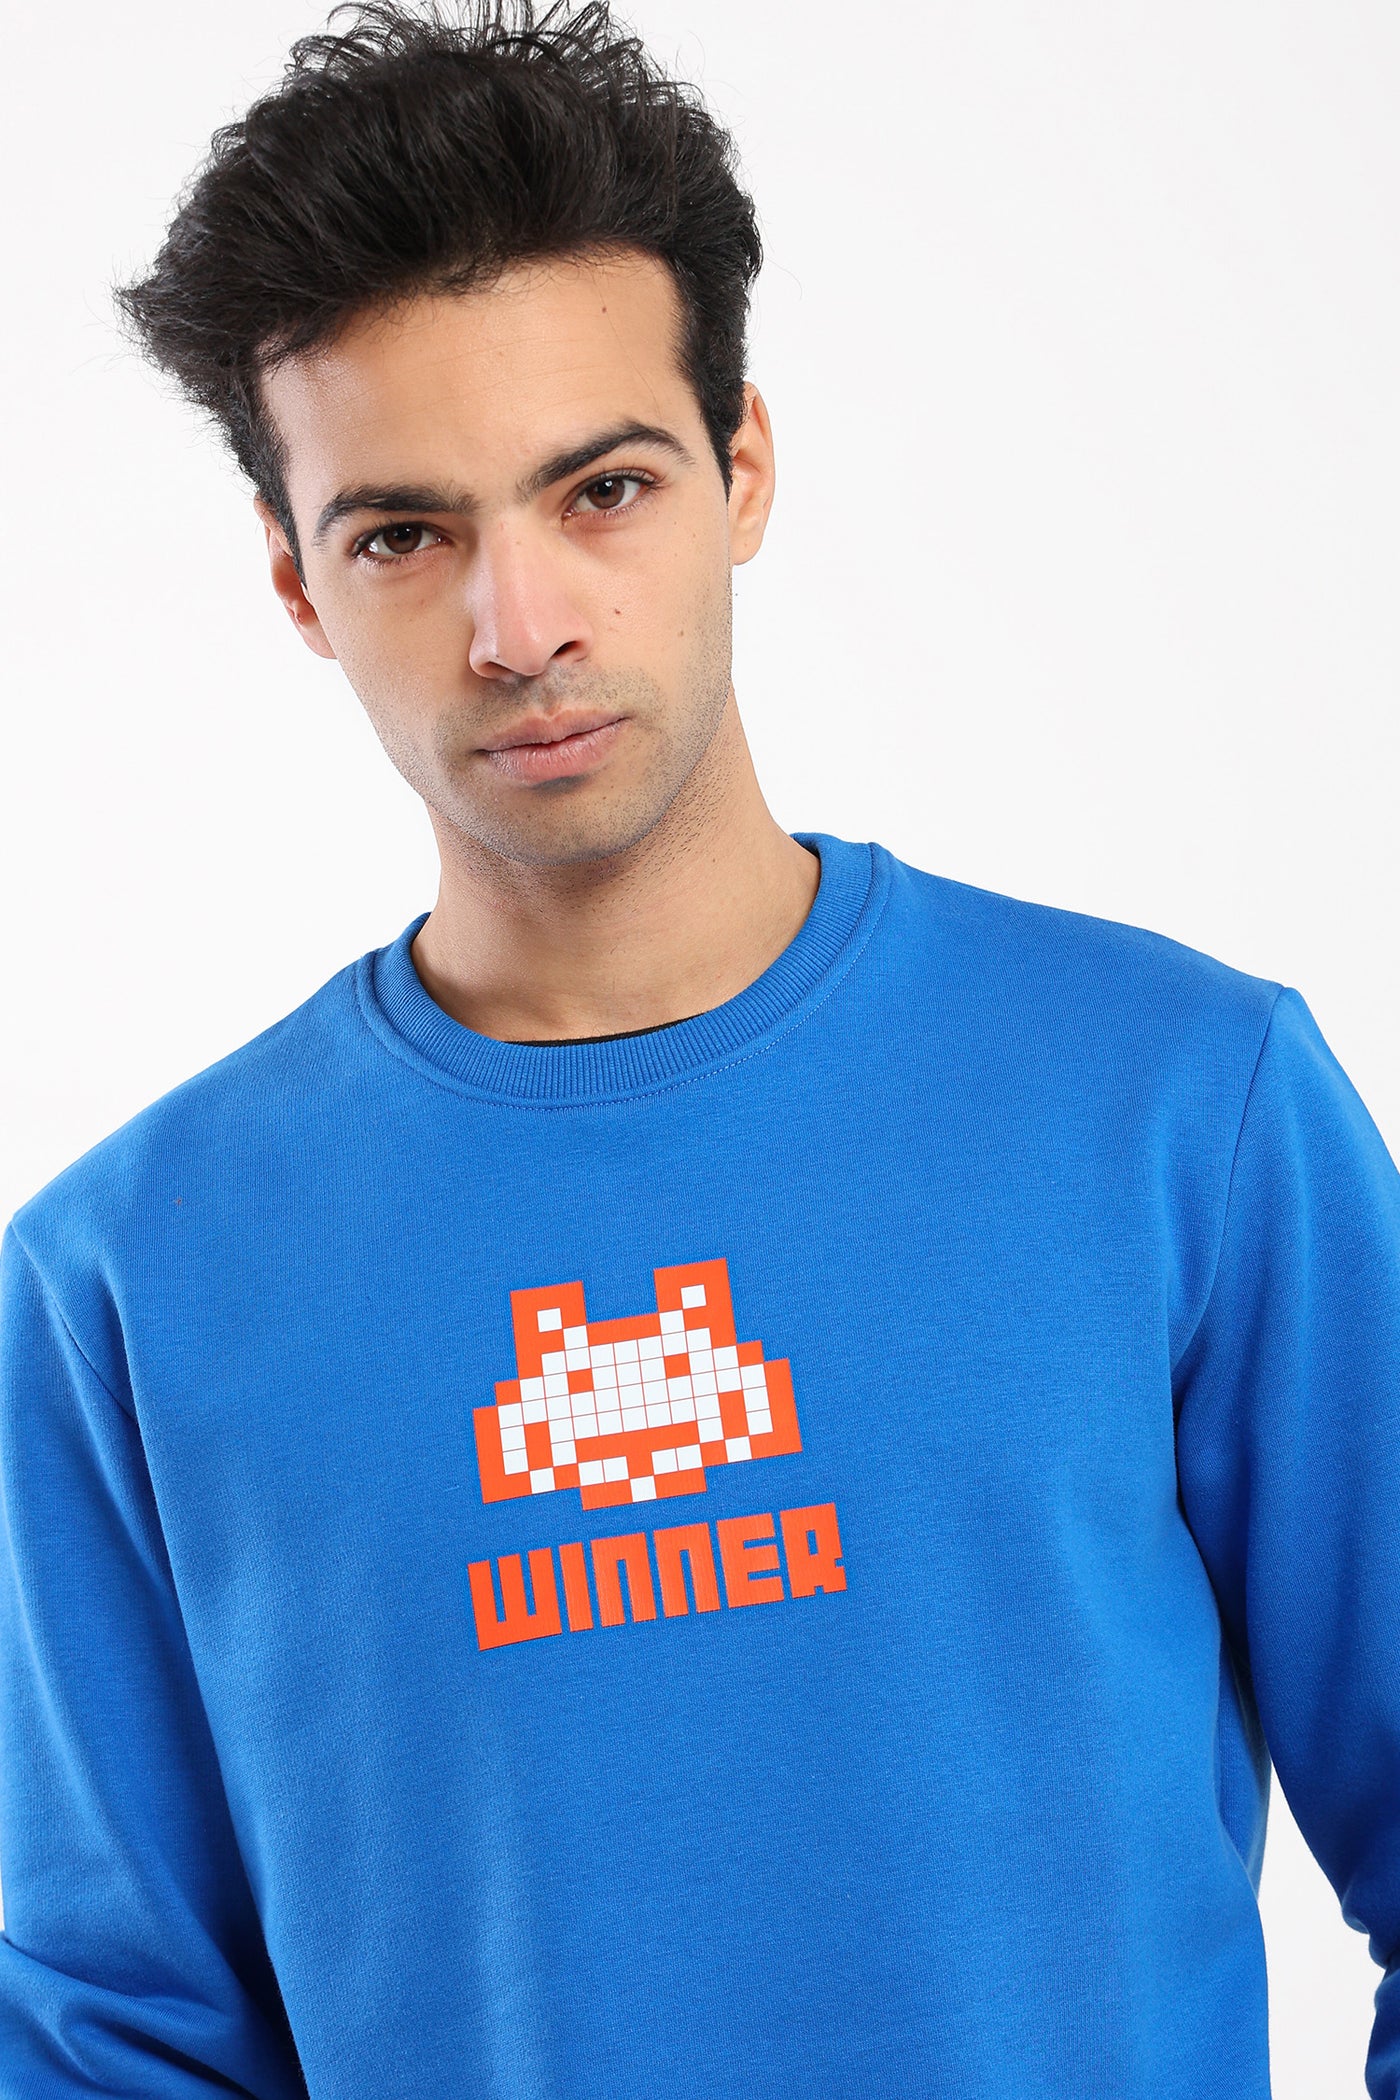 Sweatshirt - "Winner" Front Print